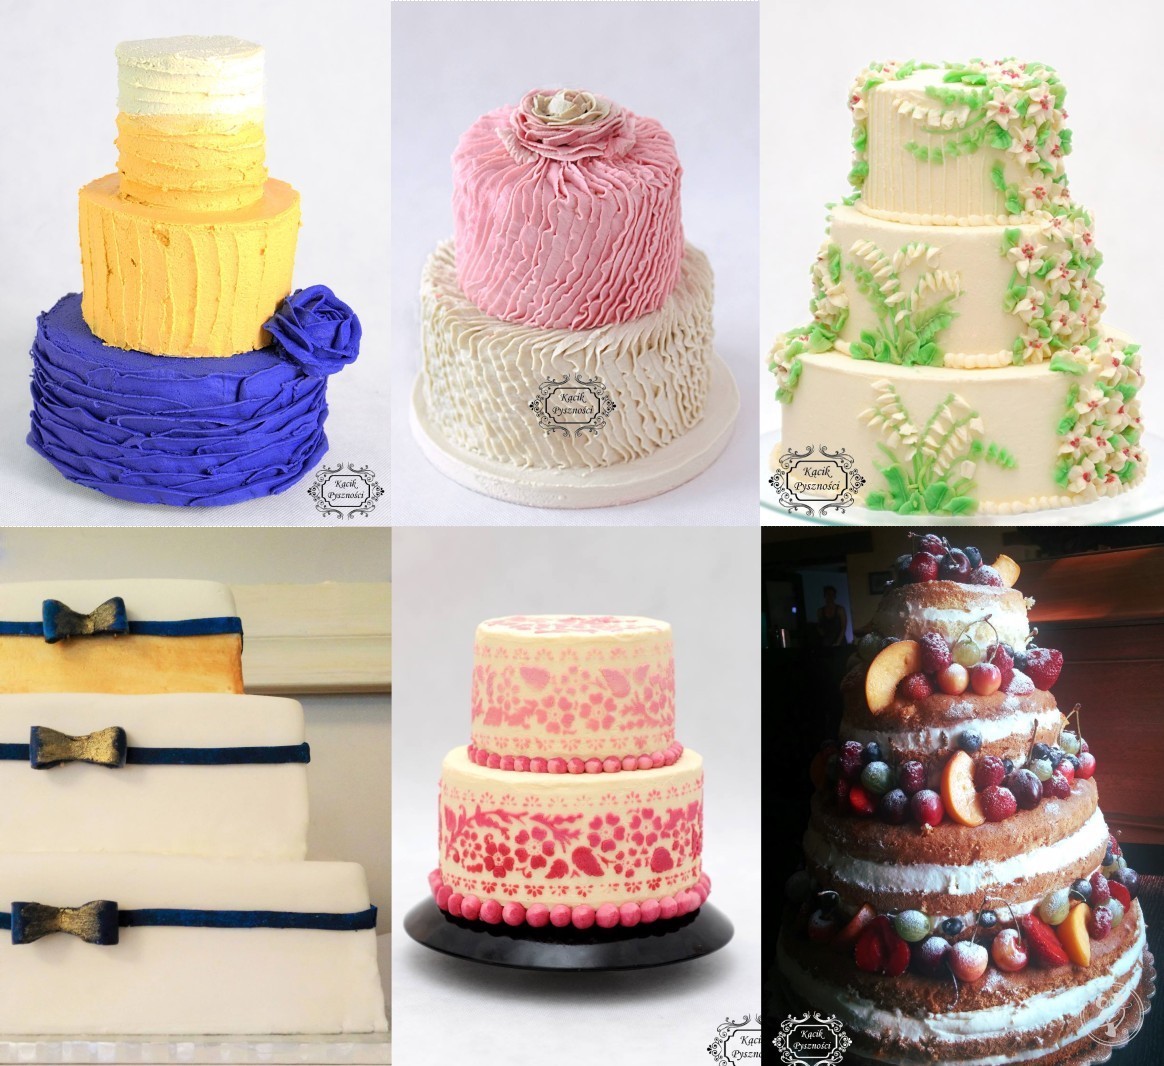 Kącik pyszności- torty ślubne, bezy, deserki, monoporcje, Karwiany - zdjęcie 1